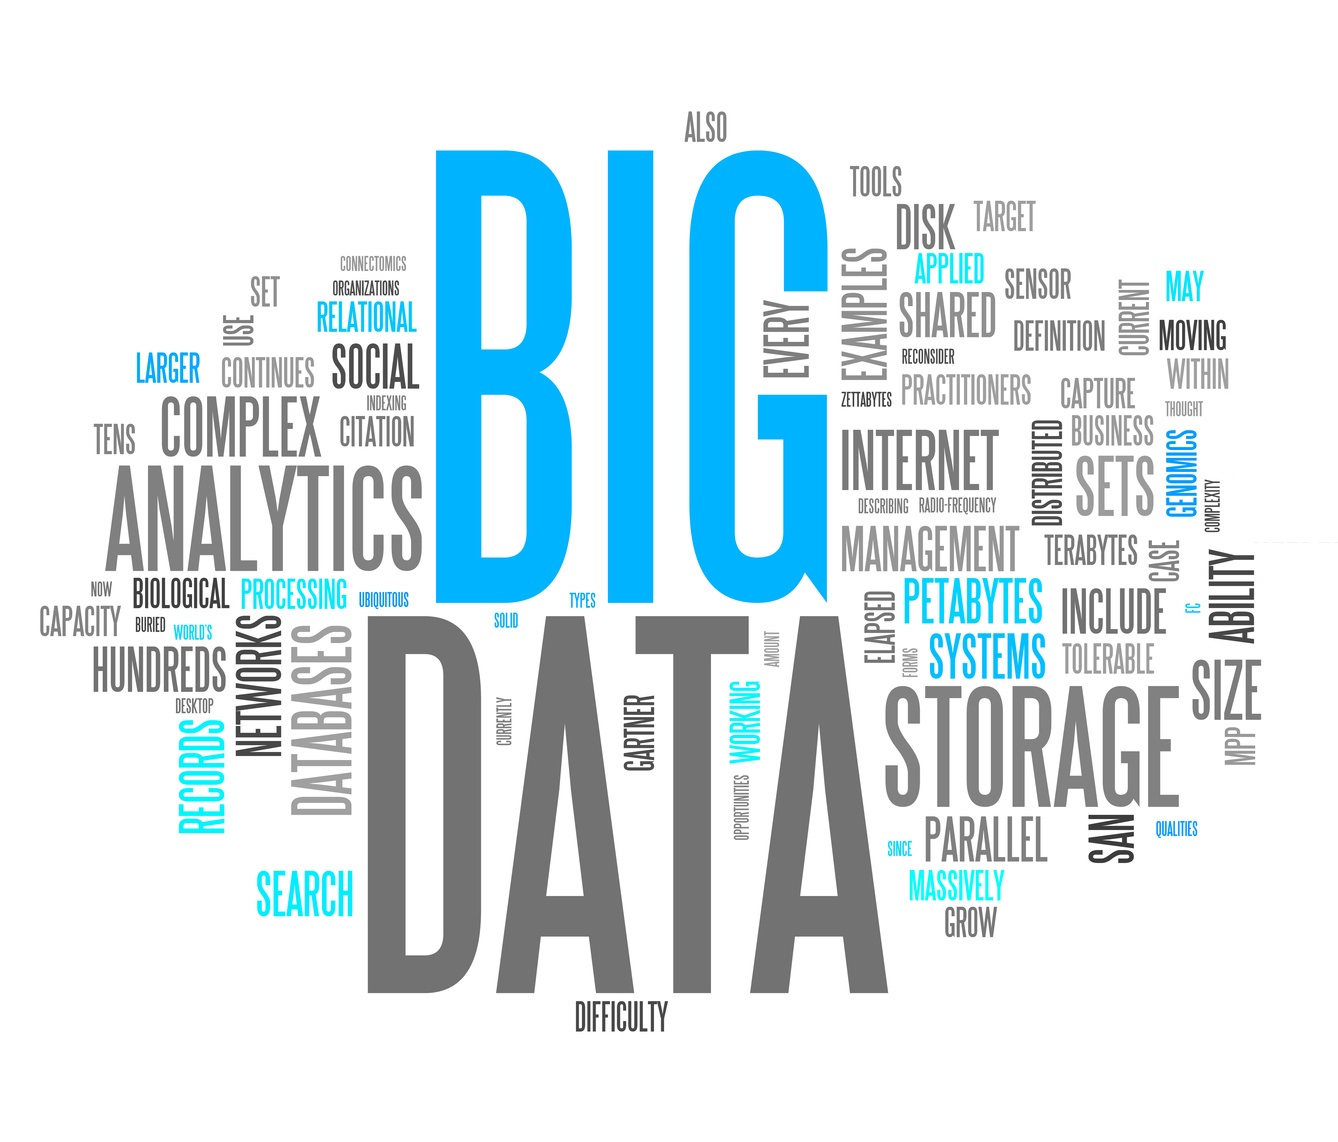 ¿Por qué es tan importante Big Data?